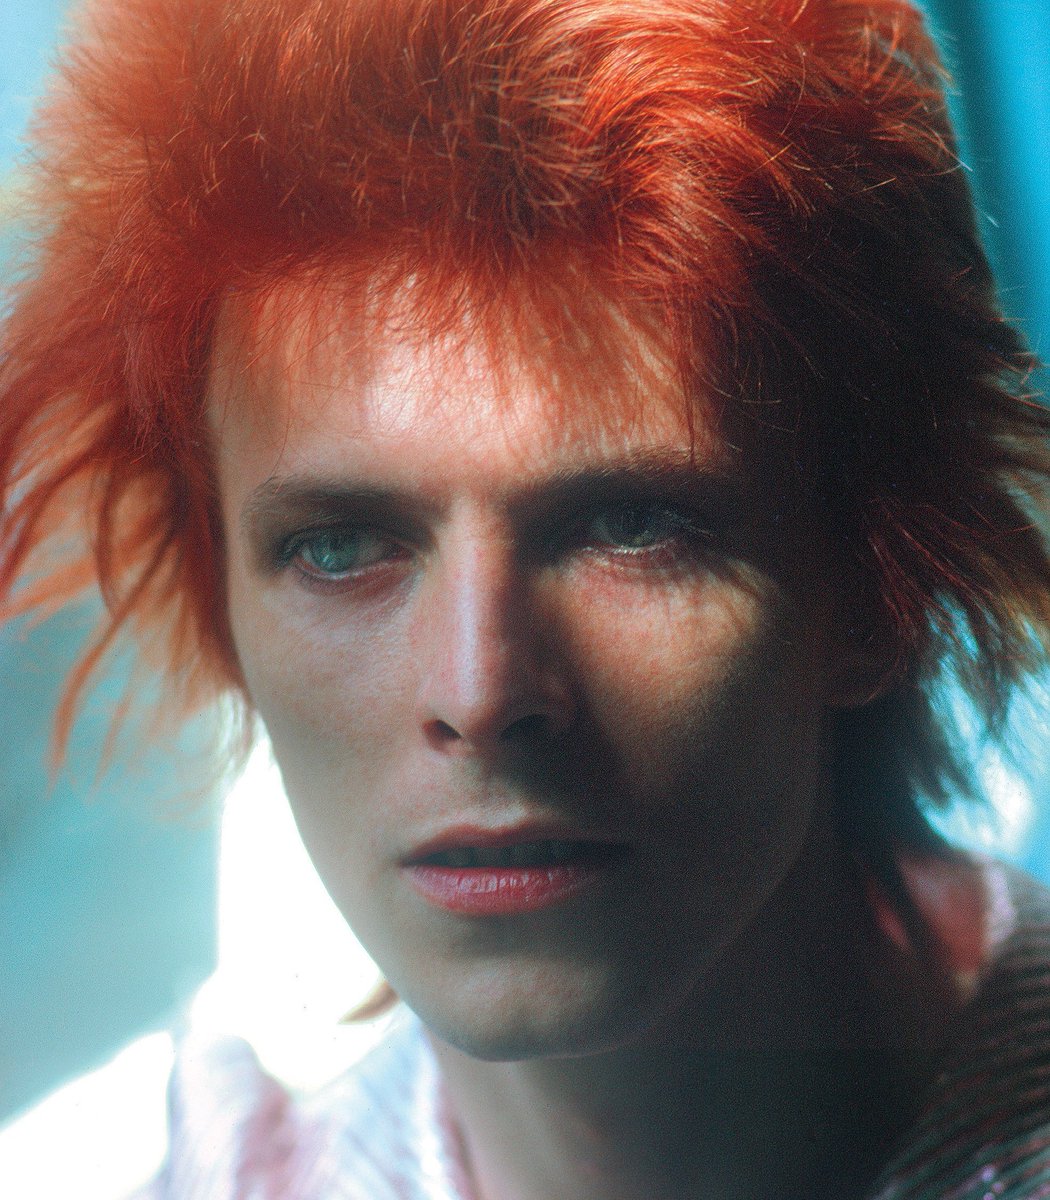 David bowie's space oddity. David Bowie 1969. David Bowie Space Oddity album. Bowie David "Space Oddity". David Bowie Space Oddity 1969.